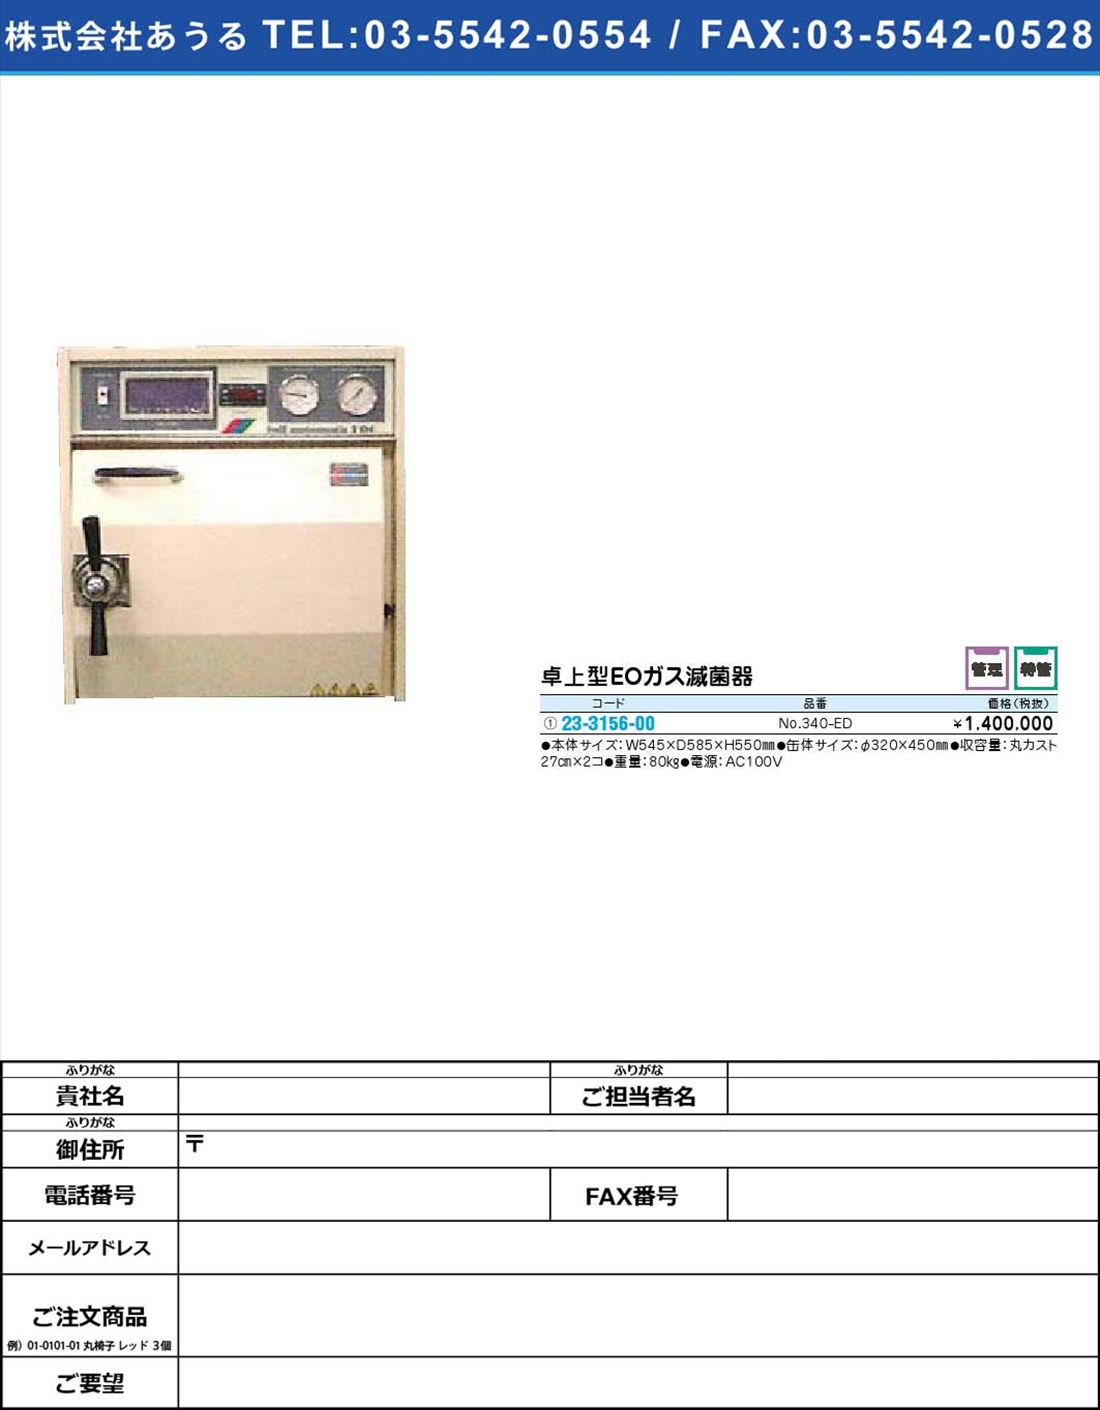 卓上型ＥＯガス滅菌器 No.340-ED【1単位】(23-3156-00)